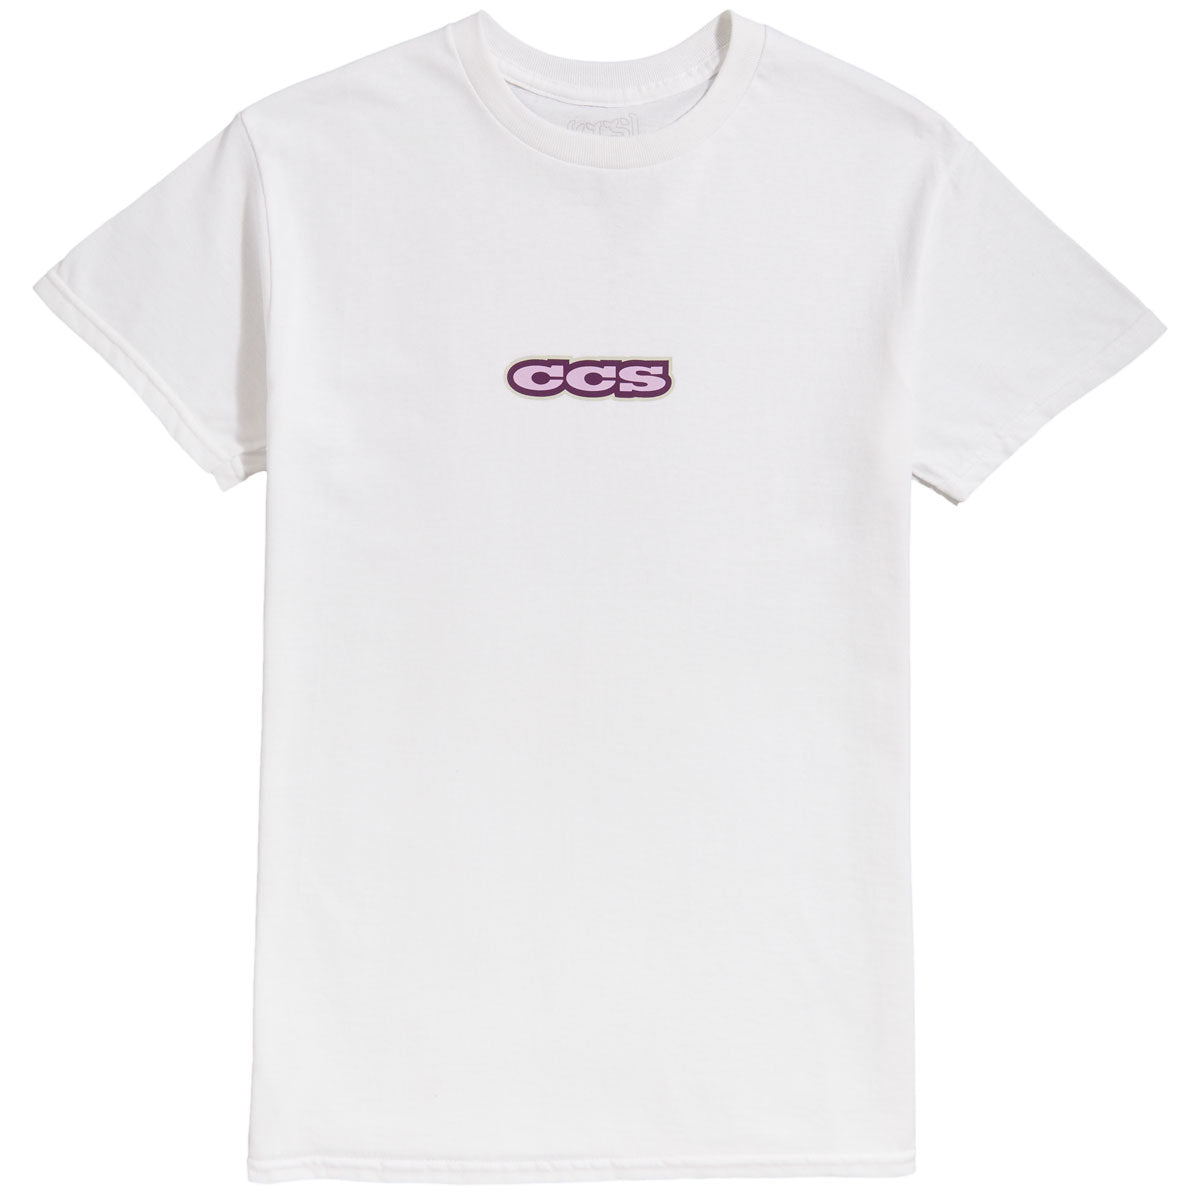 CCS 96 Logo T-Shirt - White/Lilac/Silver image 1